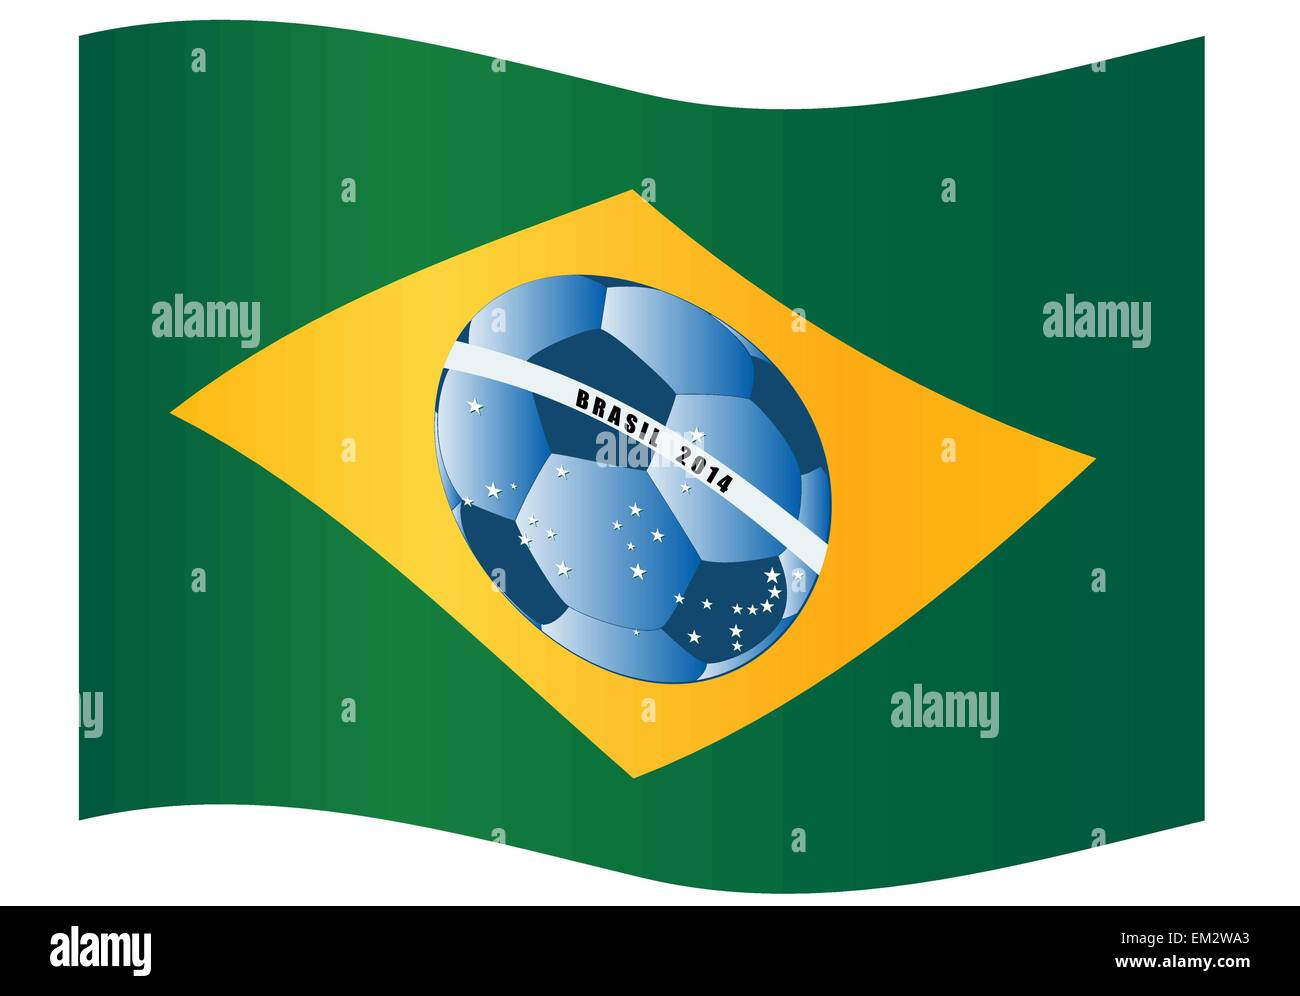 Illustrazione di vettore di bandiera Brasile con sfera di calcio Illustrazione Vettoriale